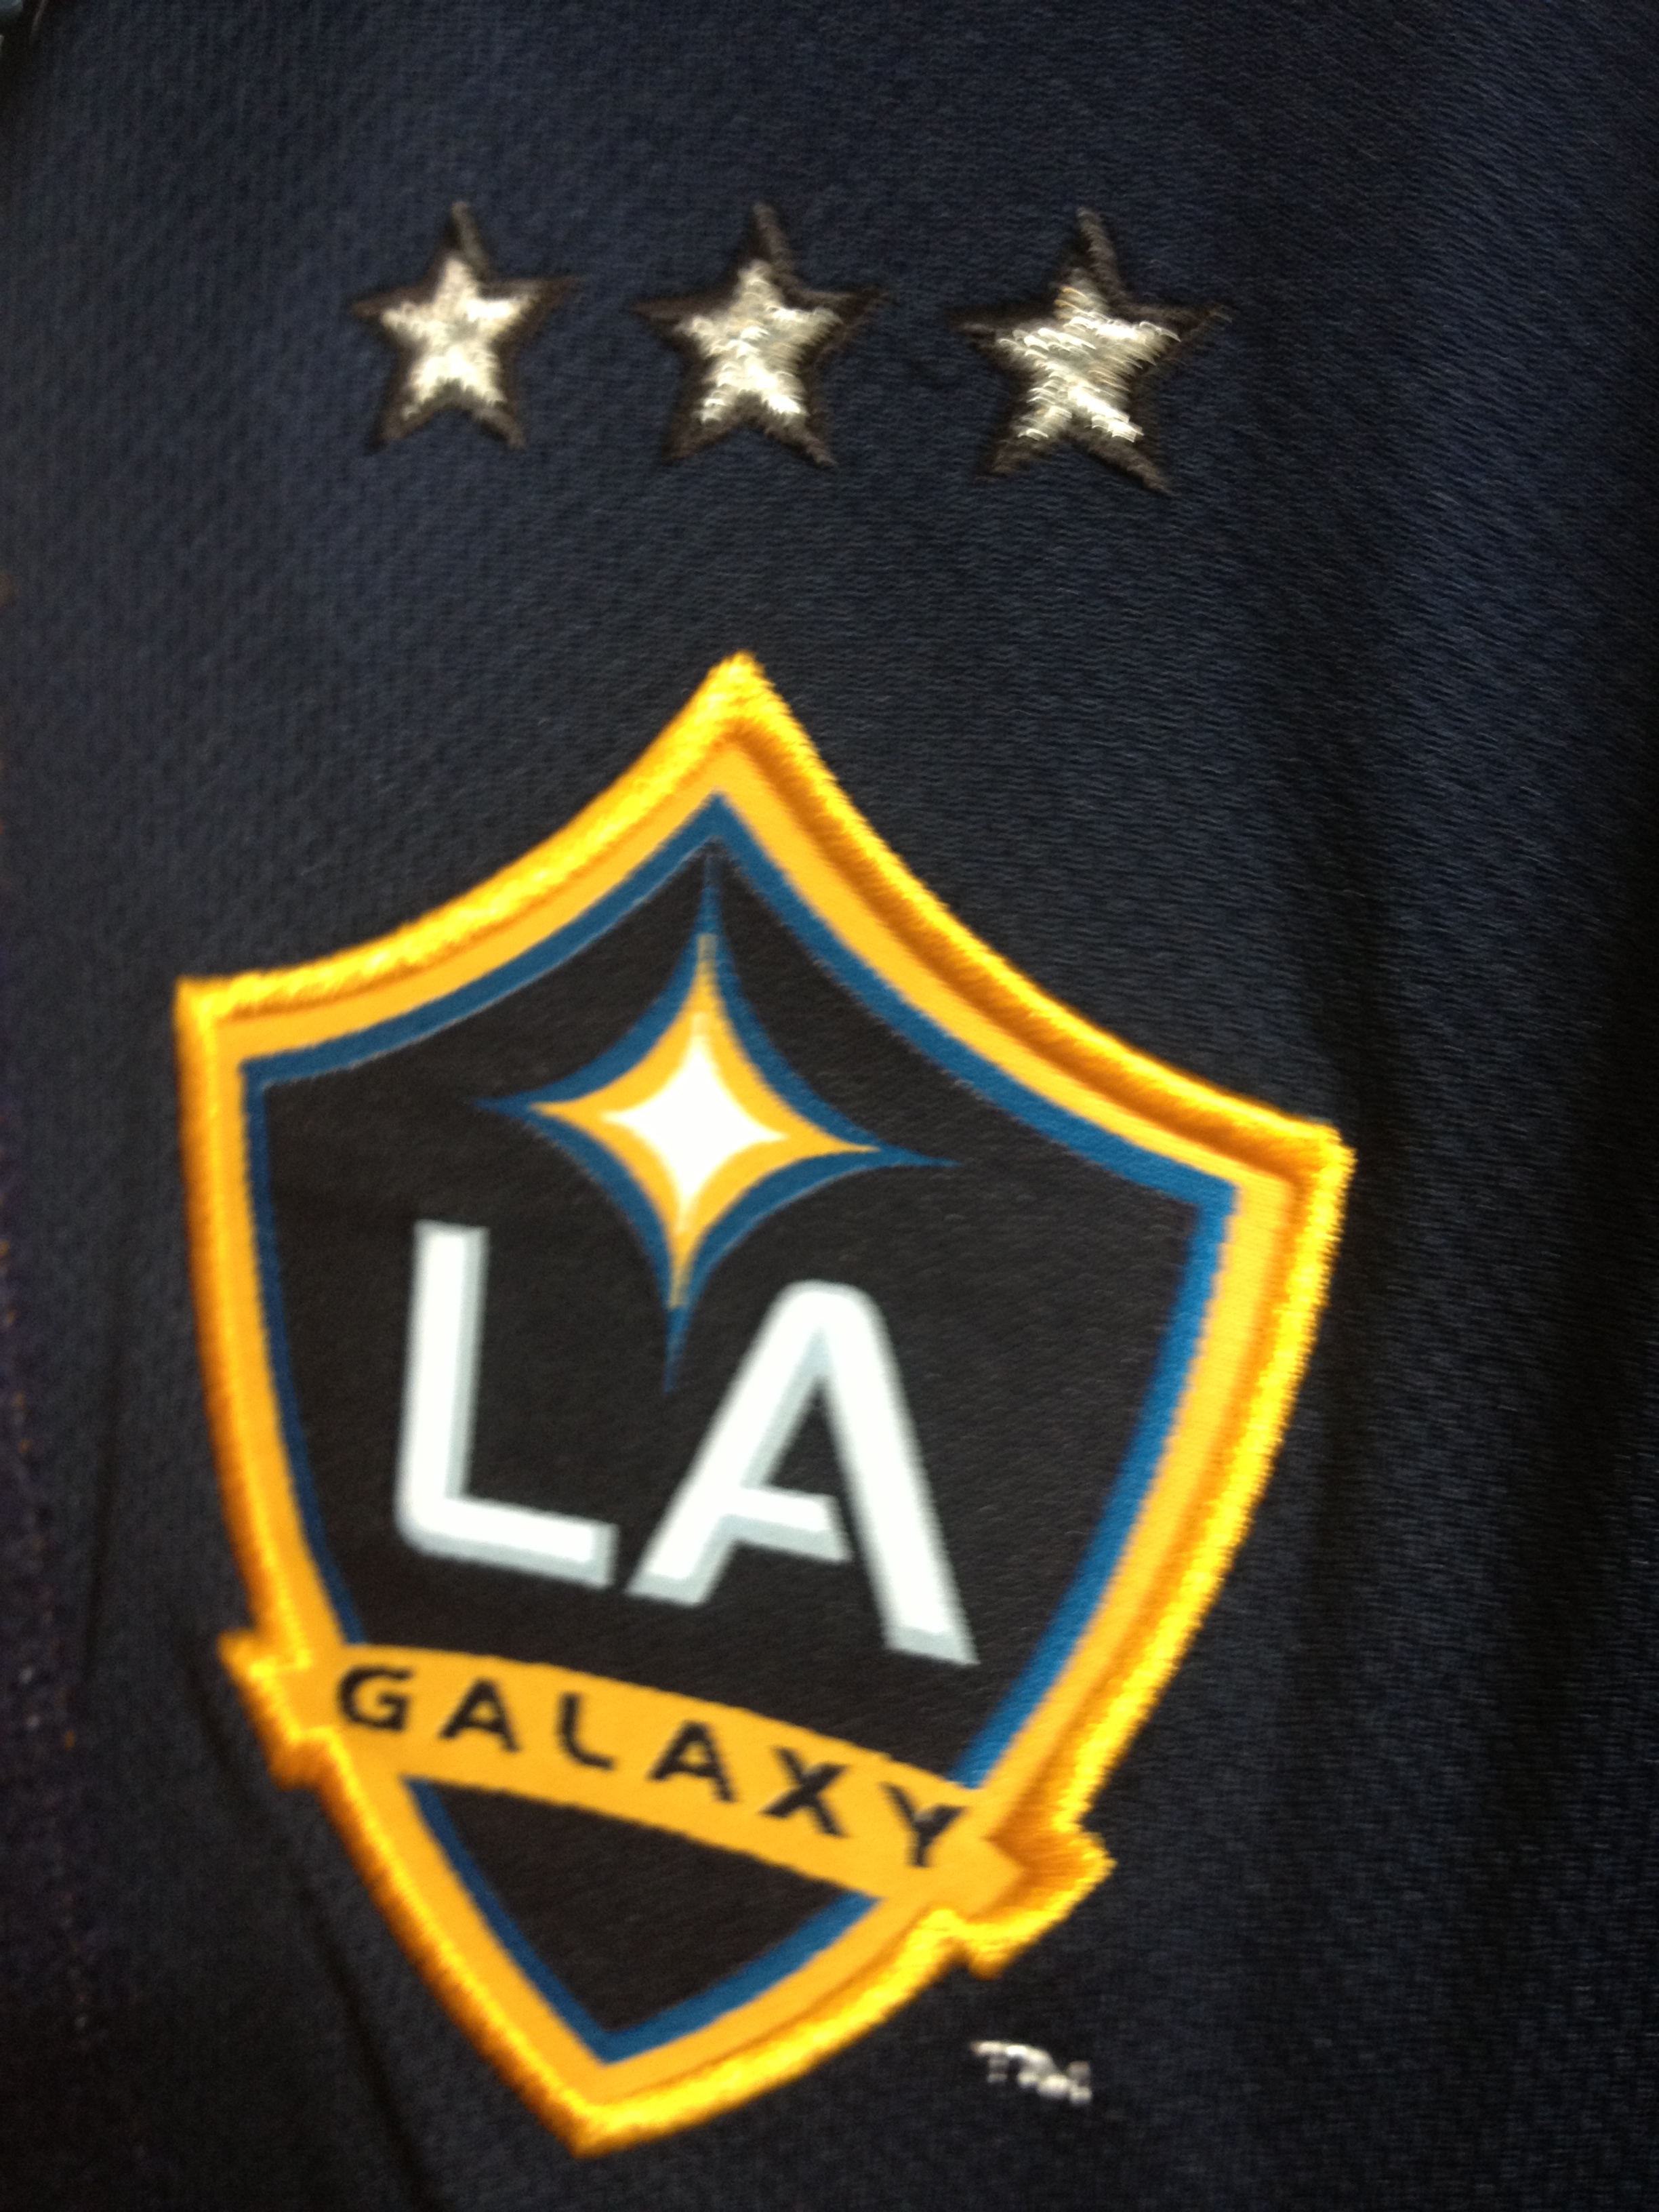 The LA Galaxys logo for 2013 pops up at The HDCs Team LA